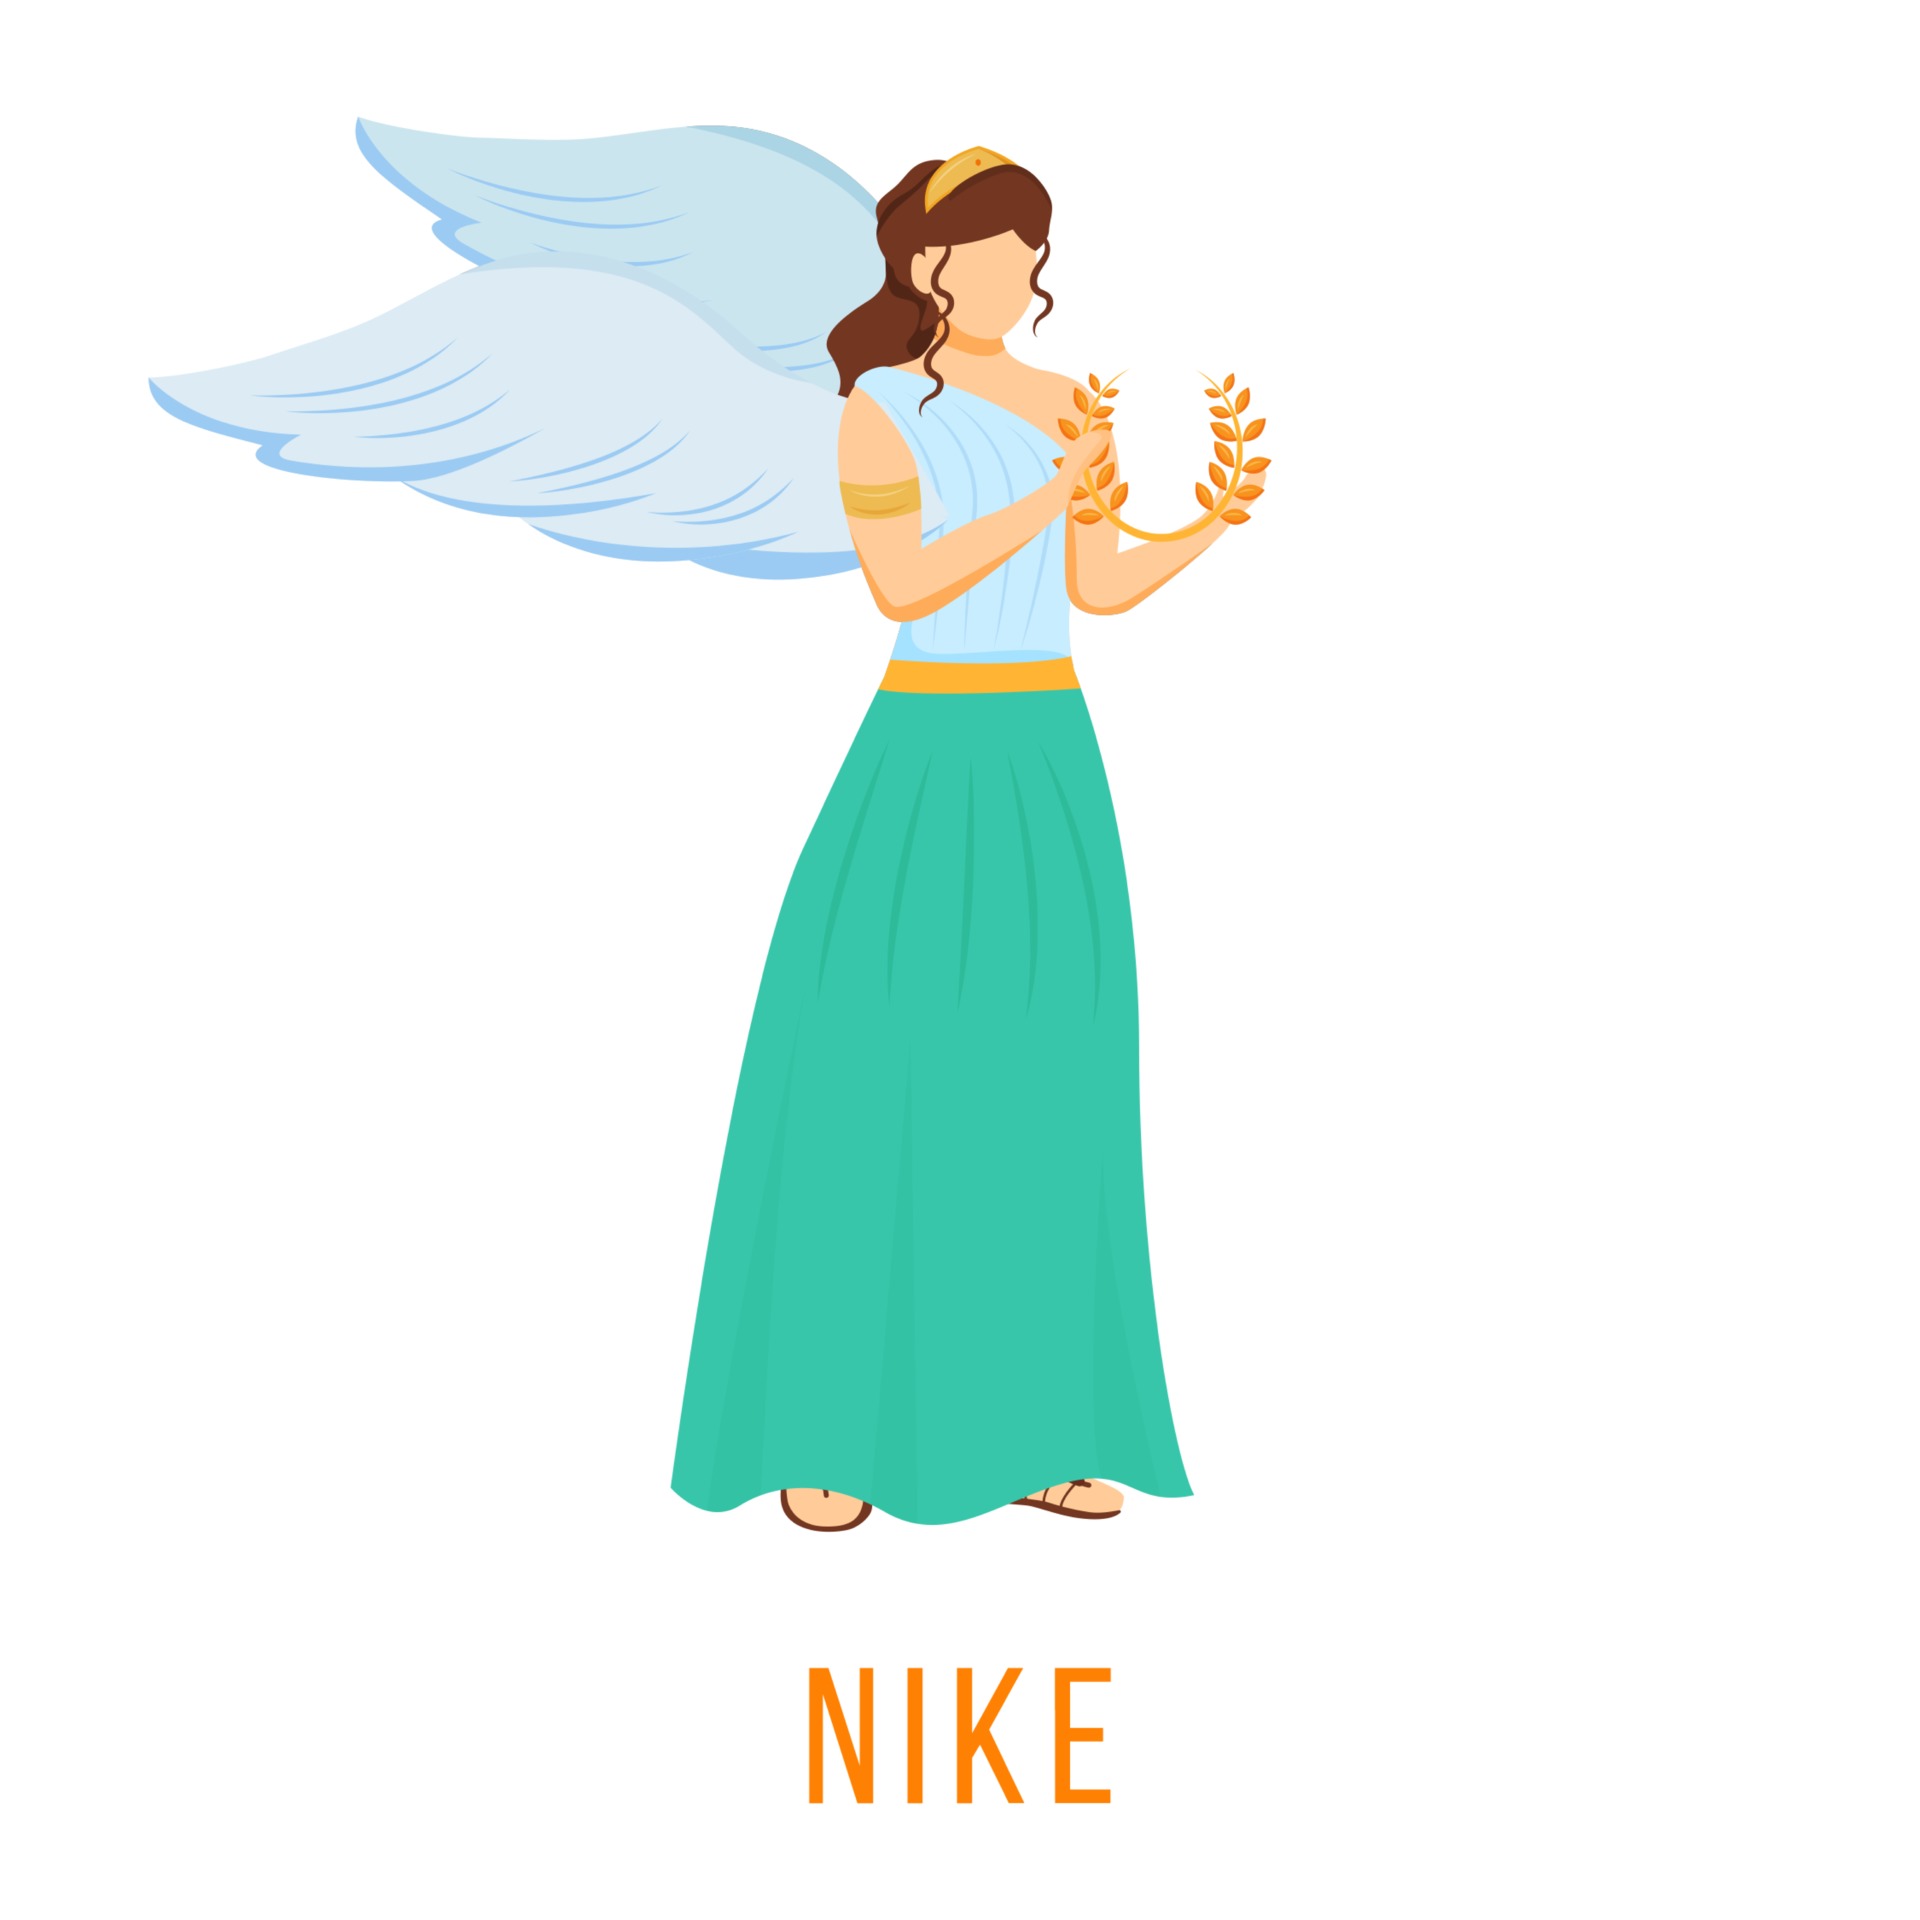 Nike platte vectorillustratie. van snelheid, kracht en overwinning. oude Griekse godheid. mythologische figuur. geïsoleerde stripfiguur op witte achtergrond 2905776 bij Vecteezy